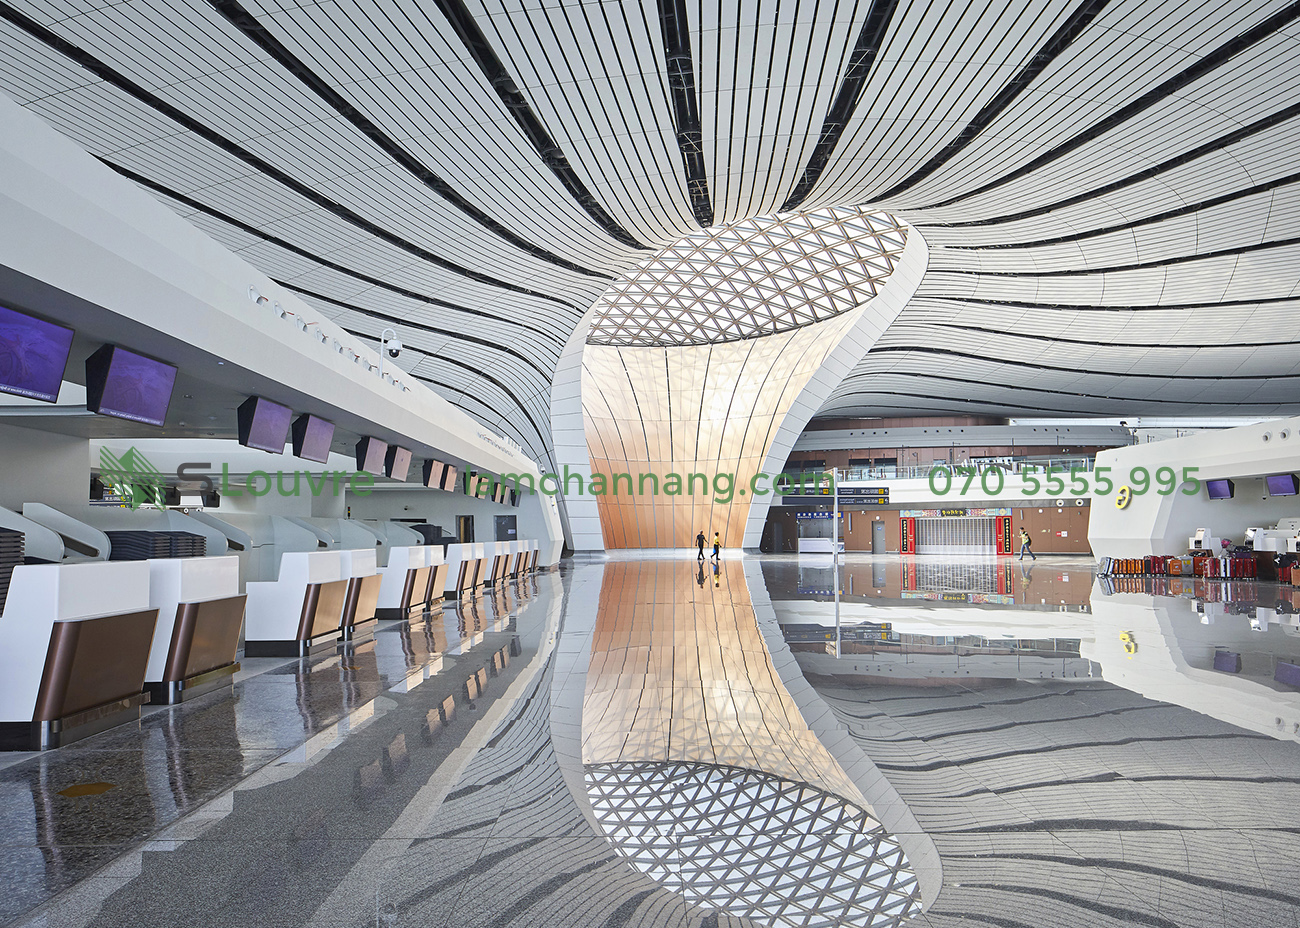 tran-nhom-san-bay-airport-aluminium-ceiling-6